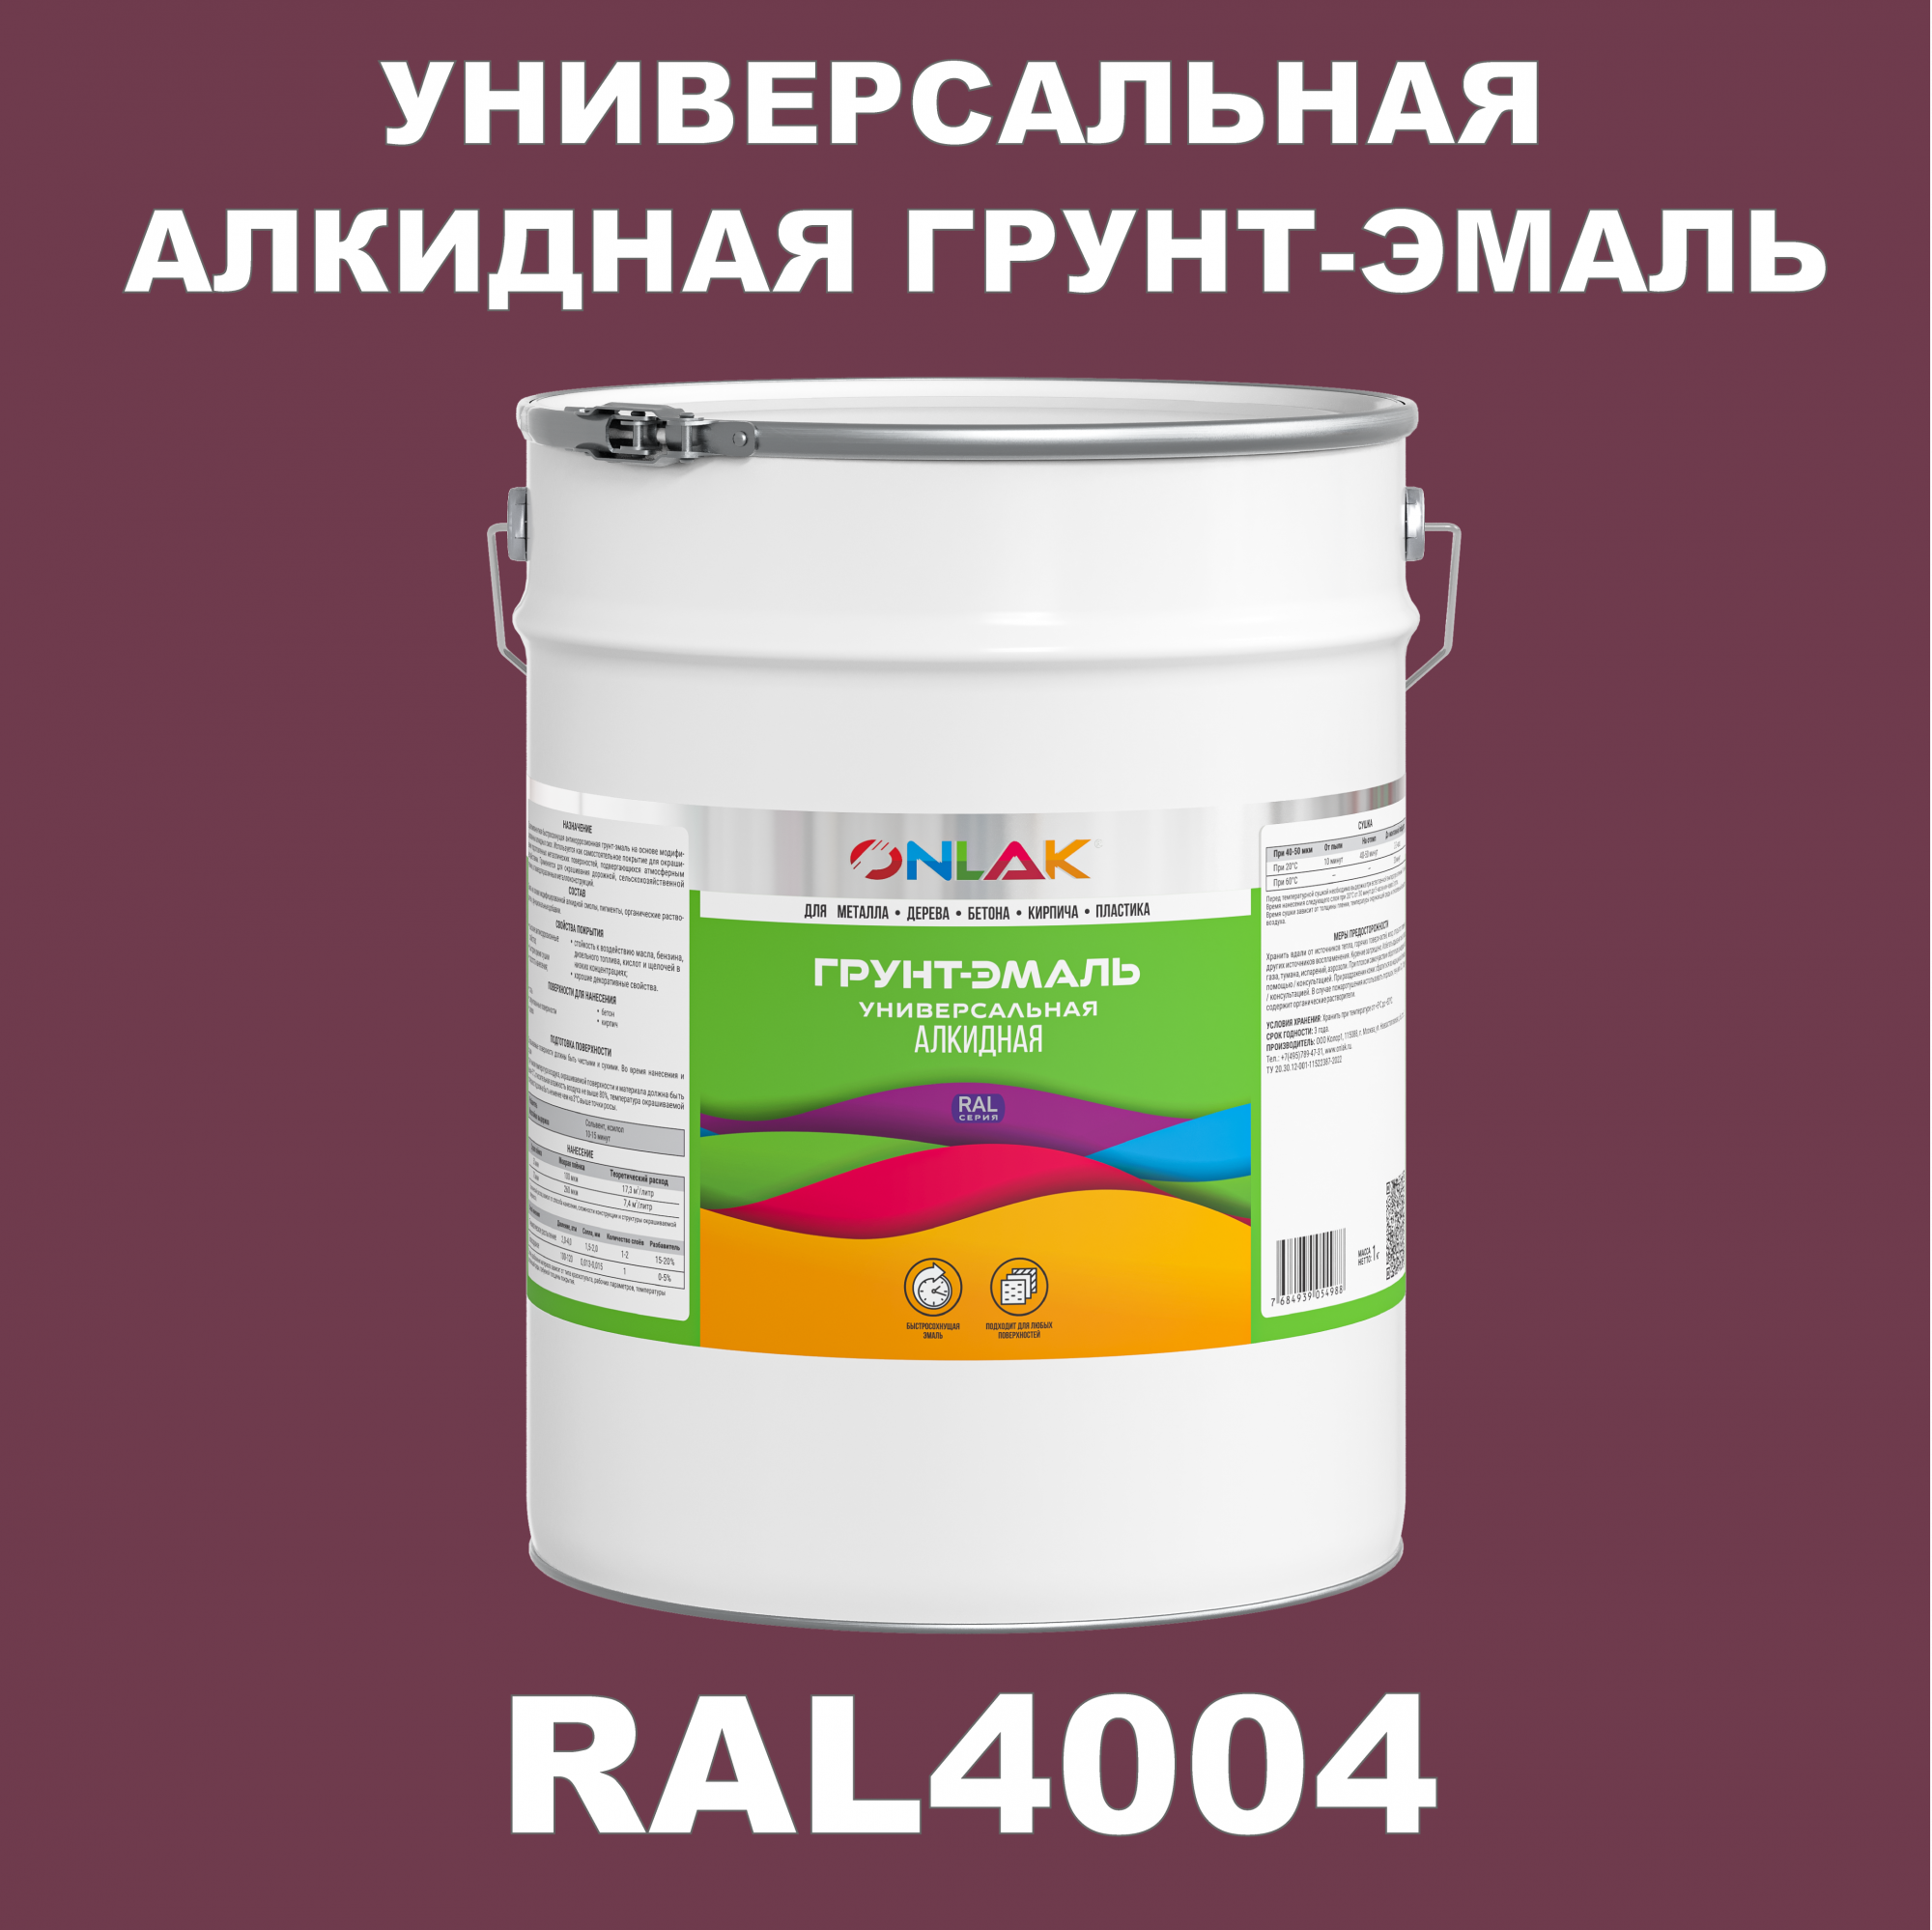 Грунт-эмаль ONLAK 1К RAL4004 антикоррозионная алкидная по металлу по ржавчине 20 кг антикоррозионная грунт эмаль onlak ral 4007 фиолетовый 572 мл